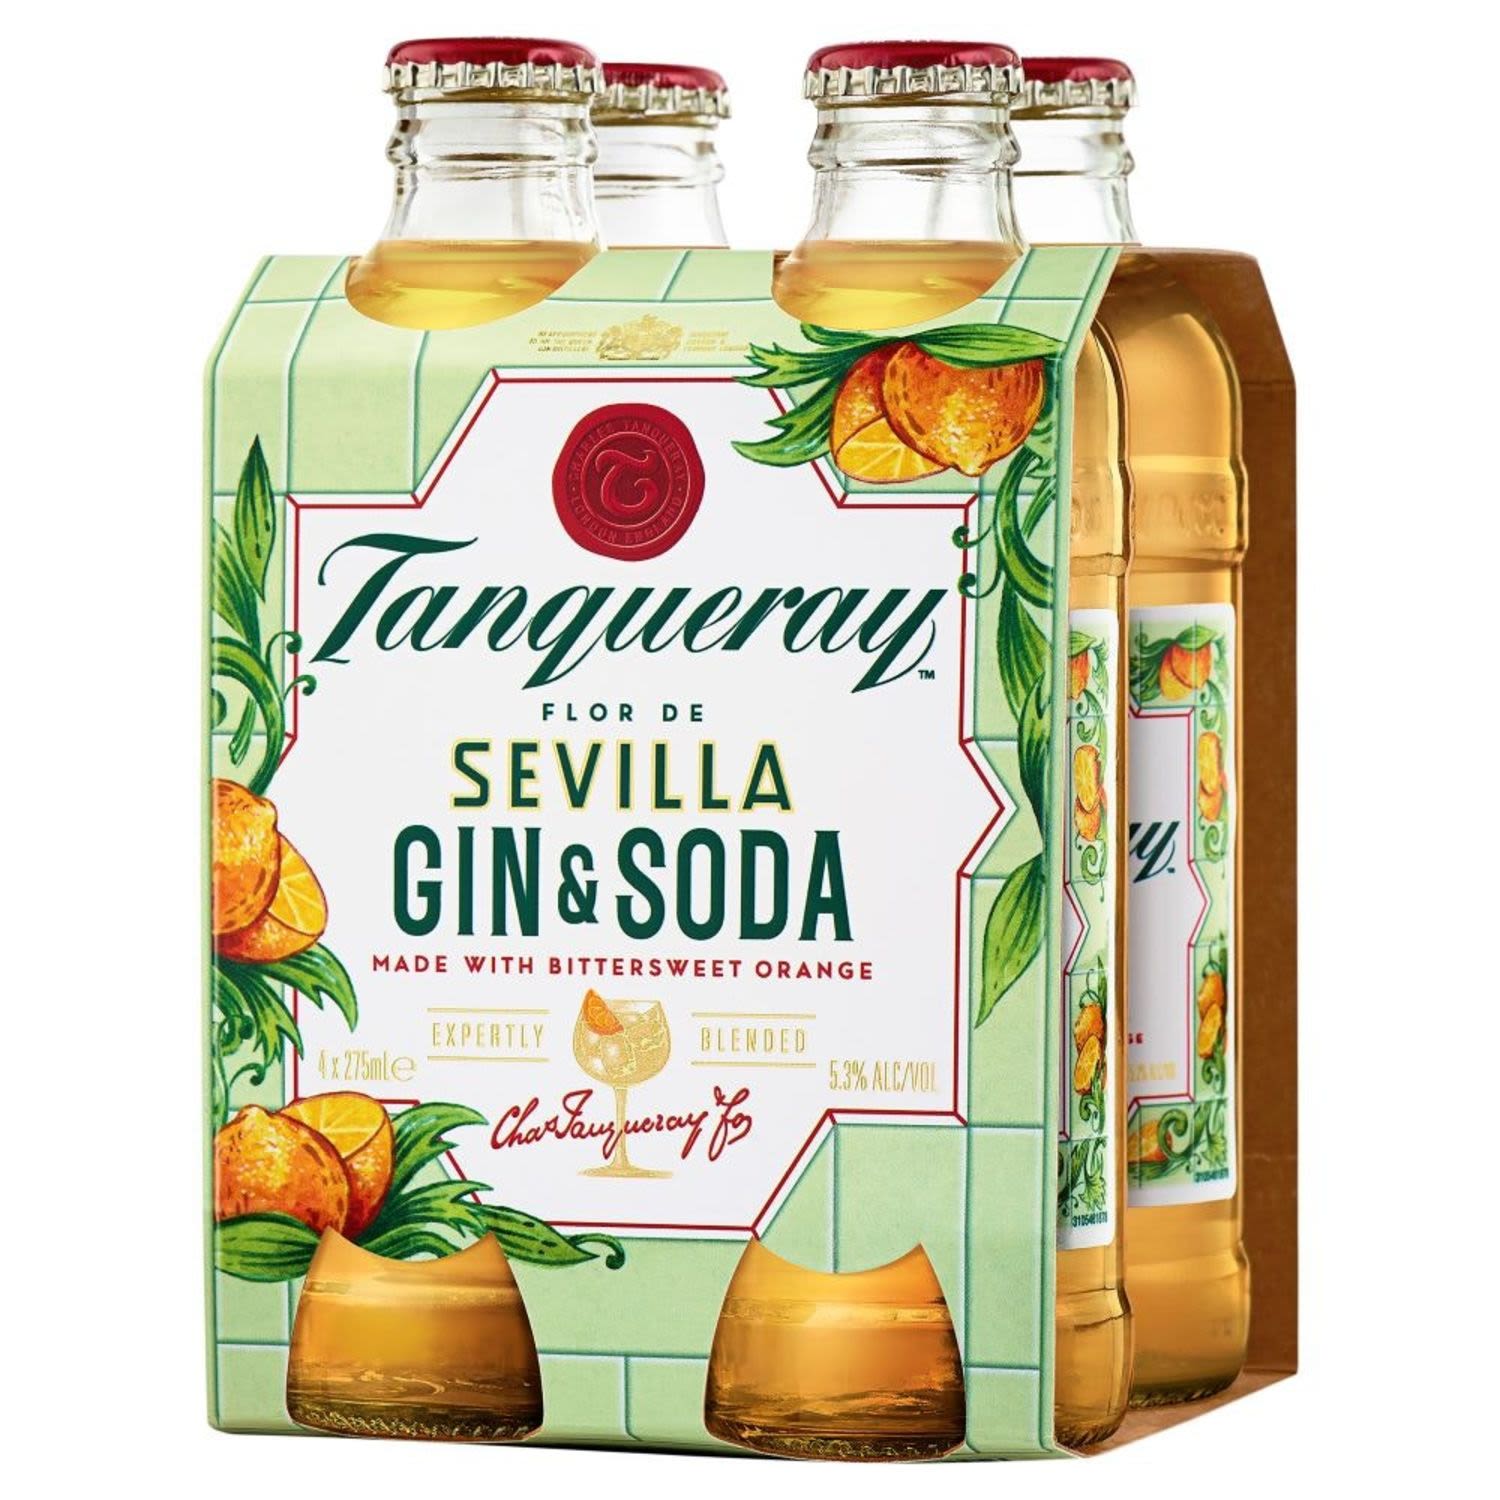 Tanqueray Flor de Sevilla Gin & Soda Bottle 275mL 4 Pack